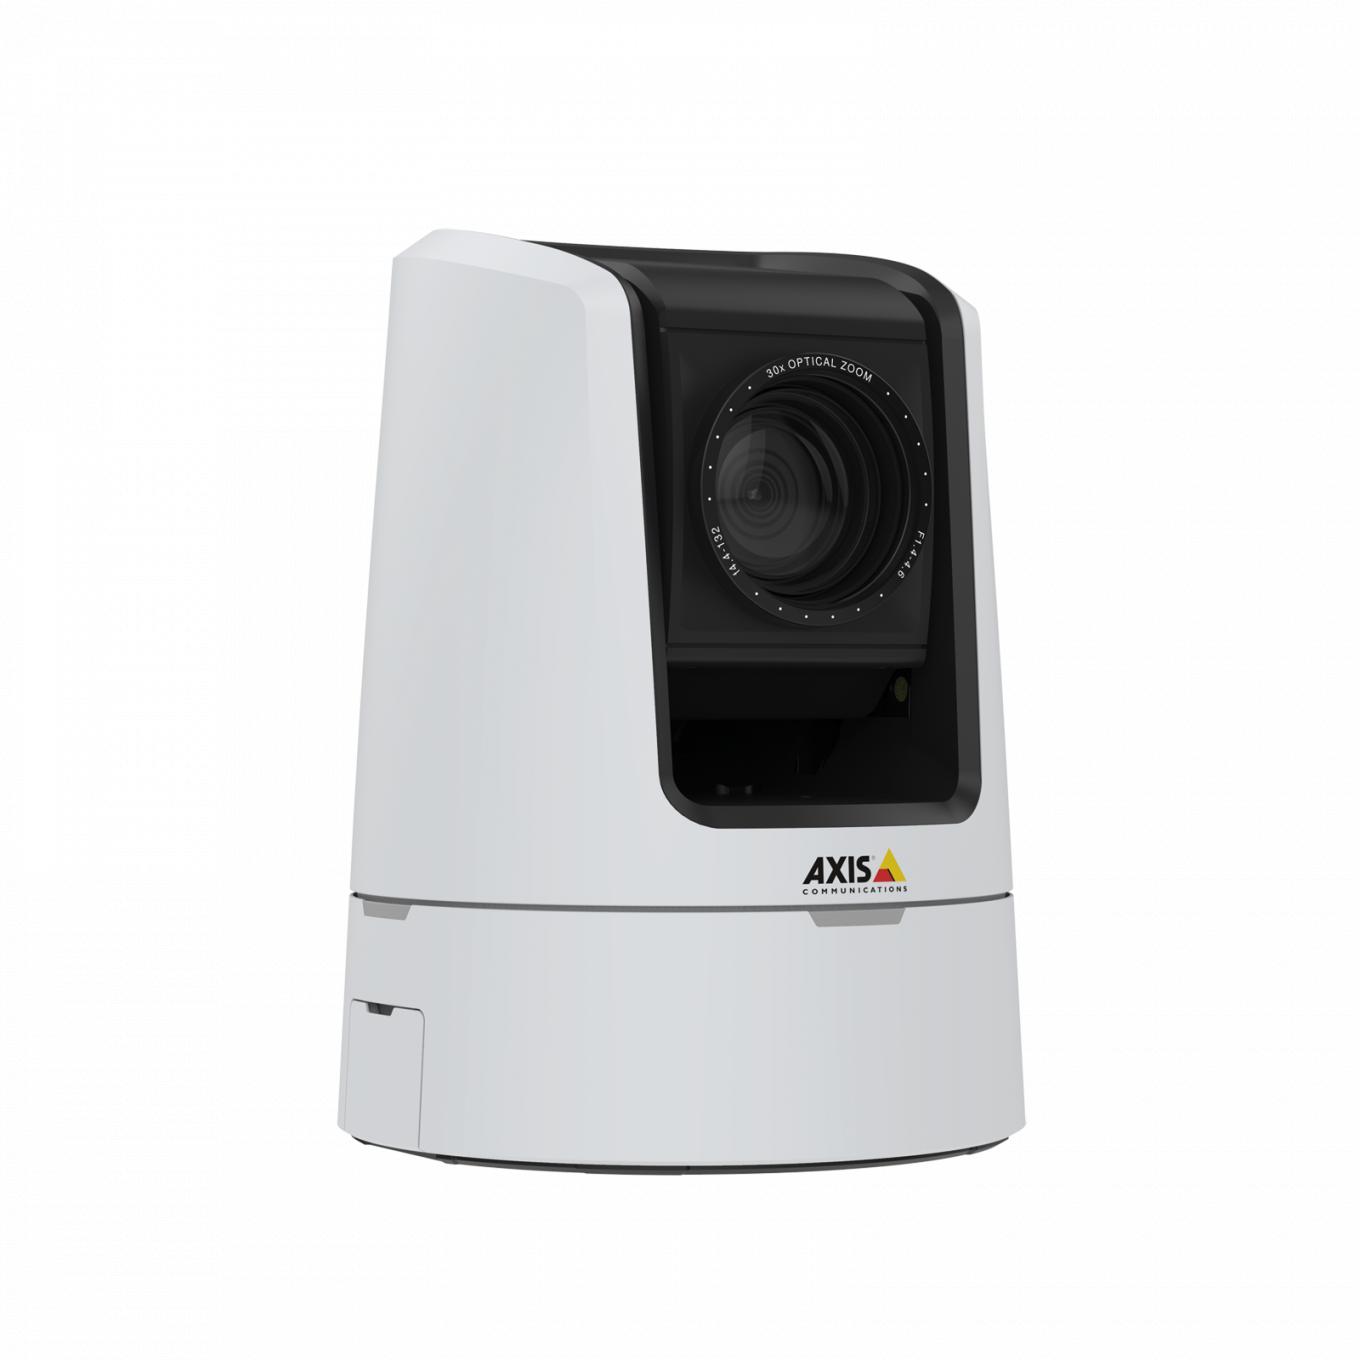 A AXIS V5925 PTZ Network Camera oferece qualidade de broadcast HDTV 1080p.